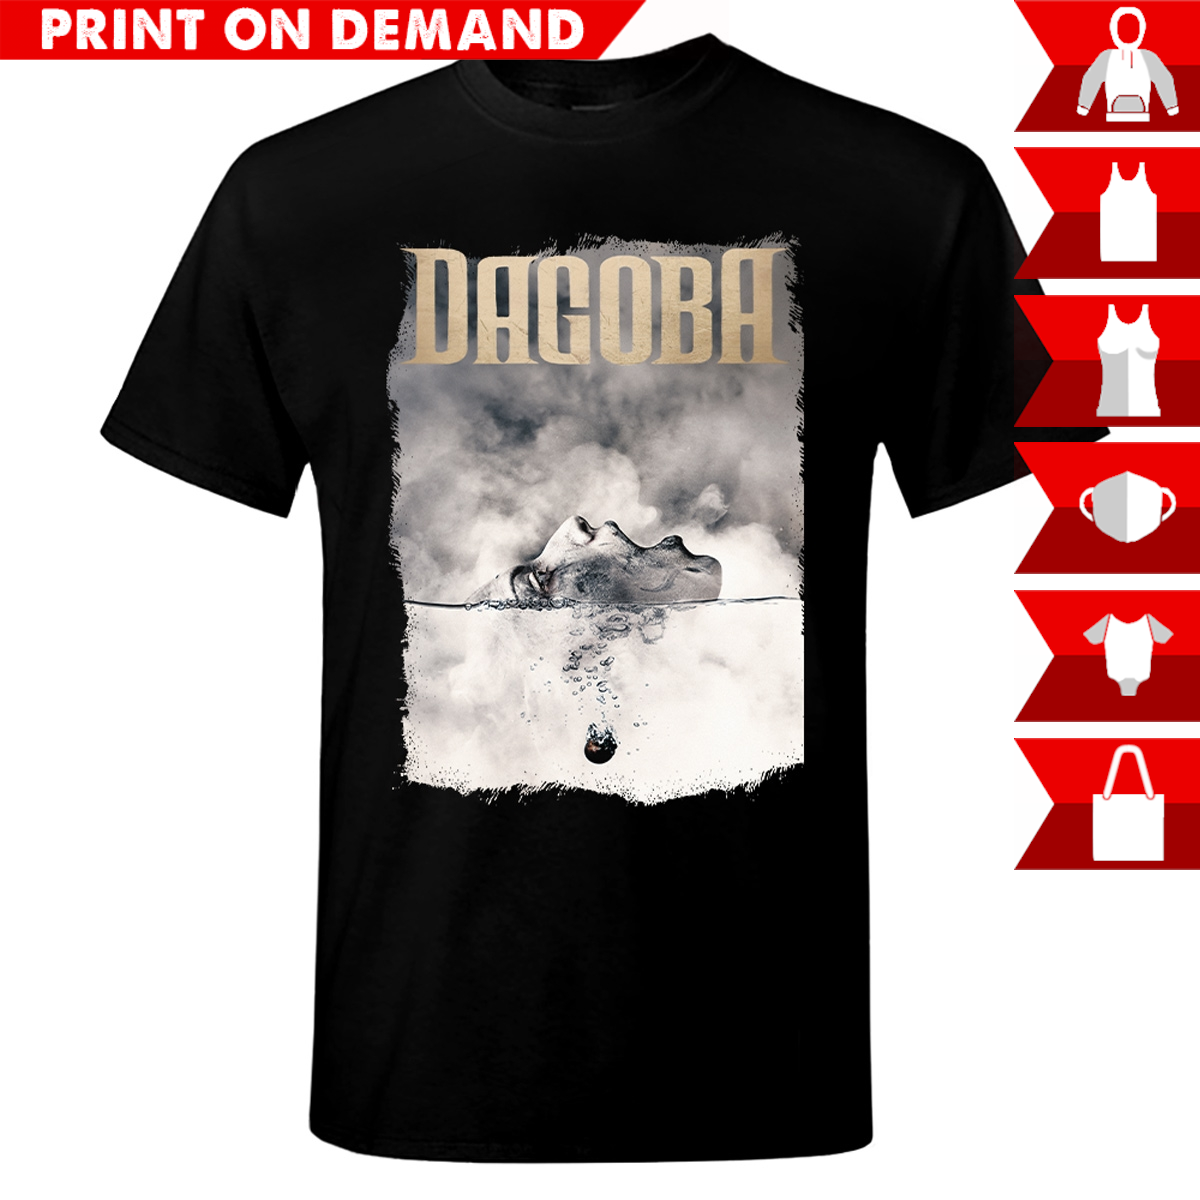 Dagoba - White Nova - Print on demand